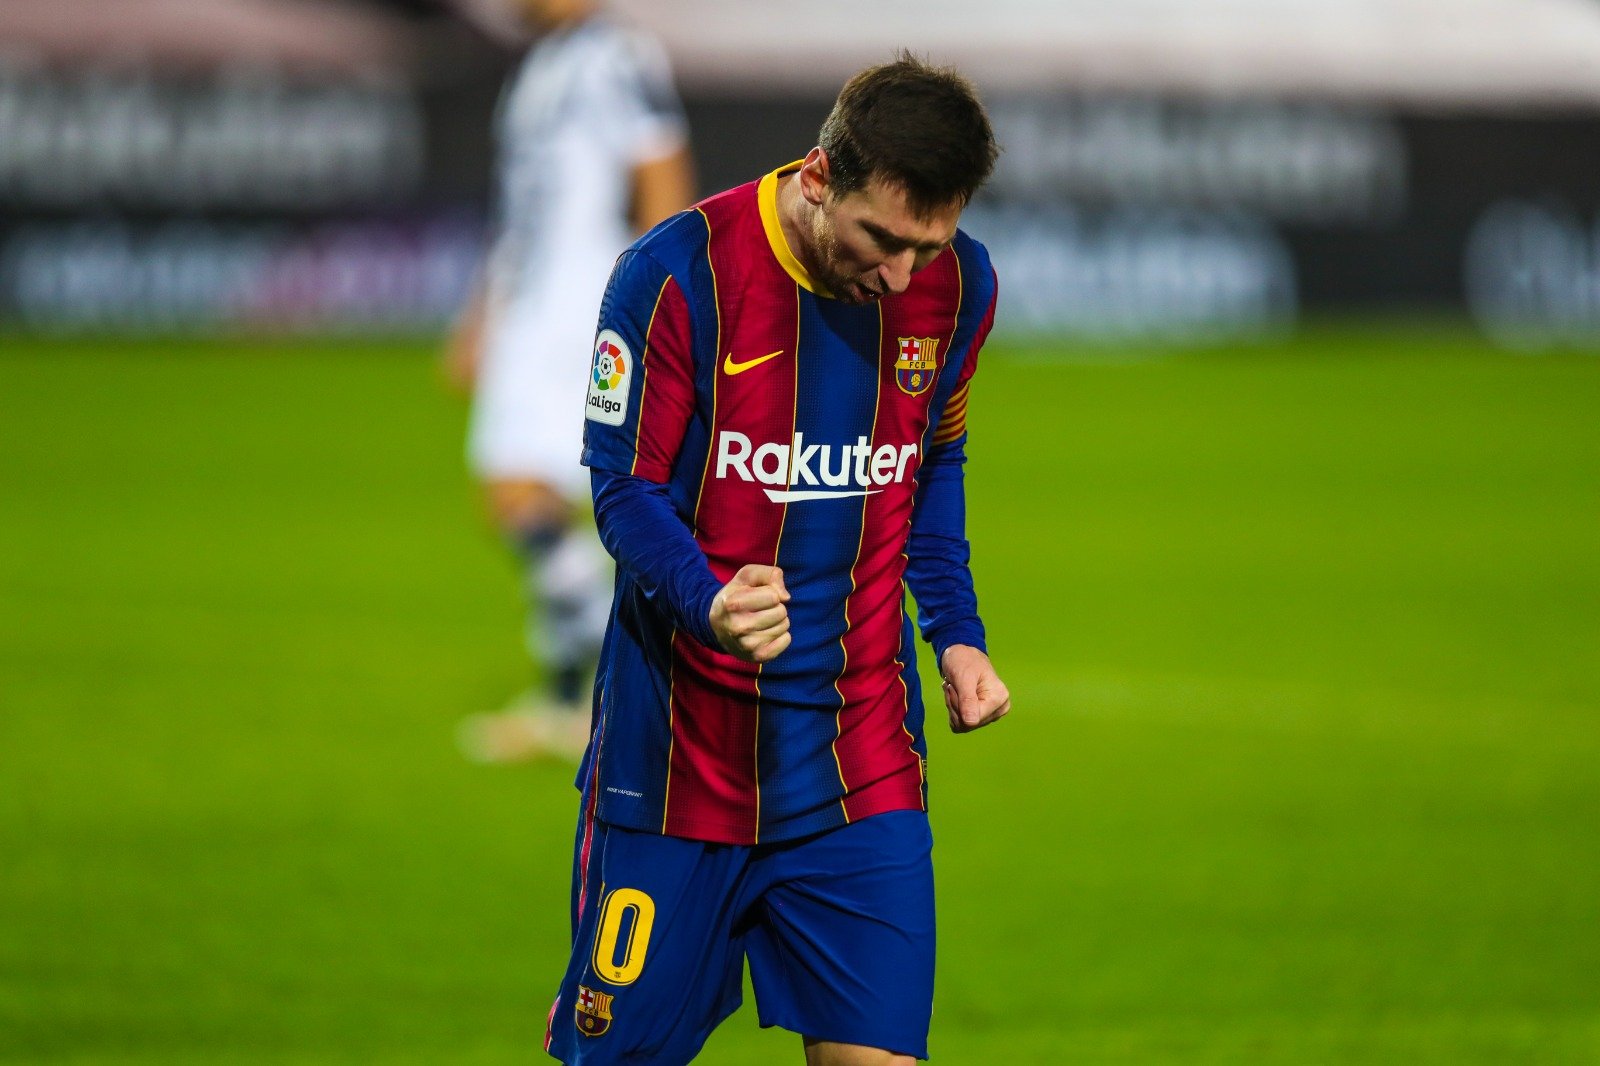 Anunci galàctic a punt al Barça abans que Messi, petició de Xavi Hernández